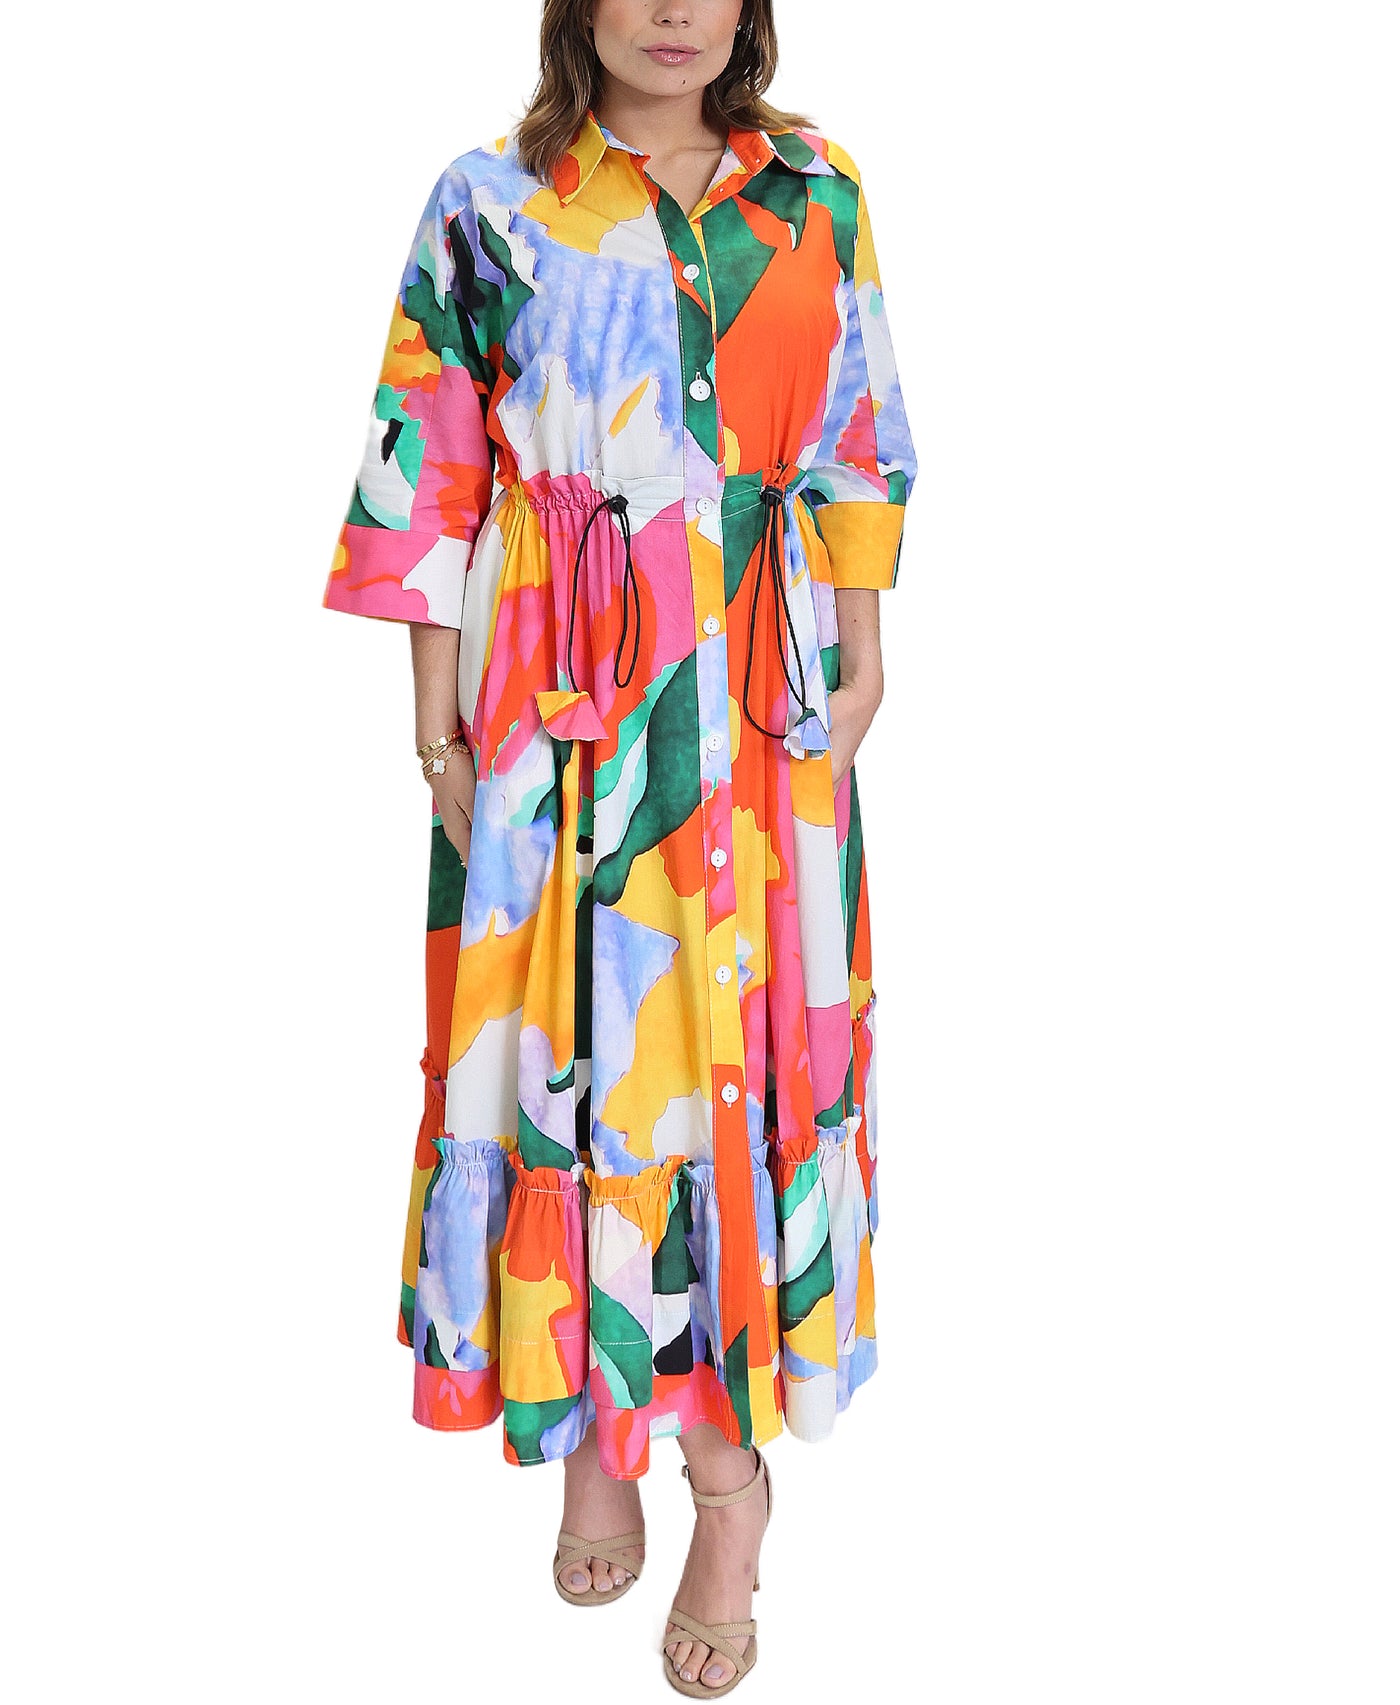 Multicolor Maxi Dress image 1